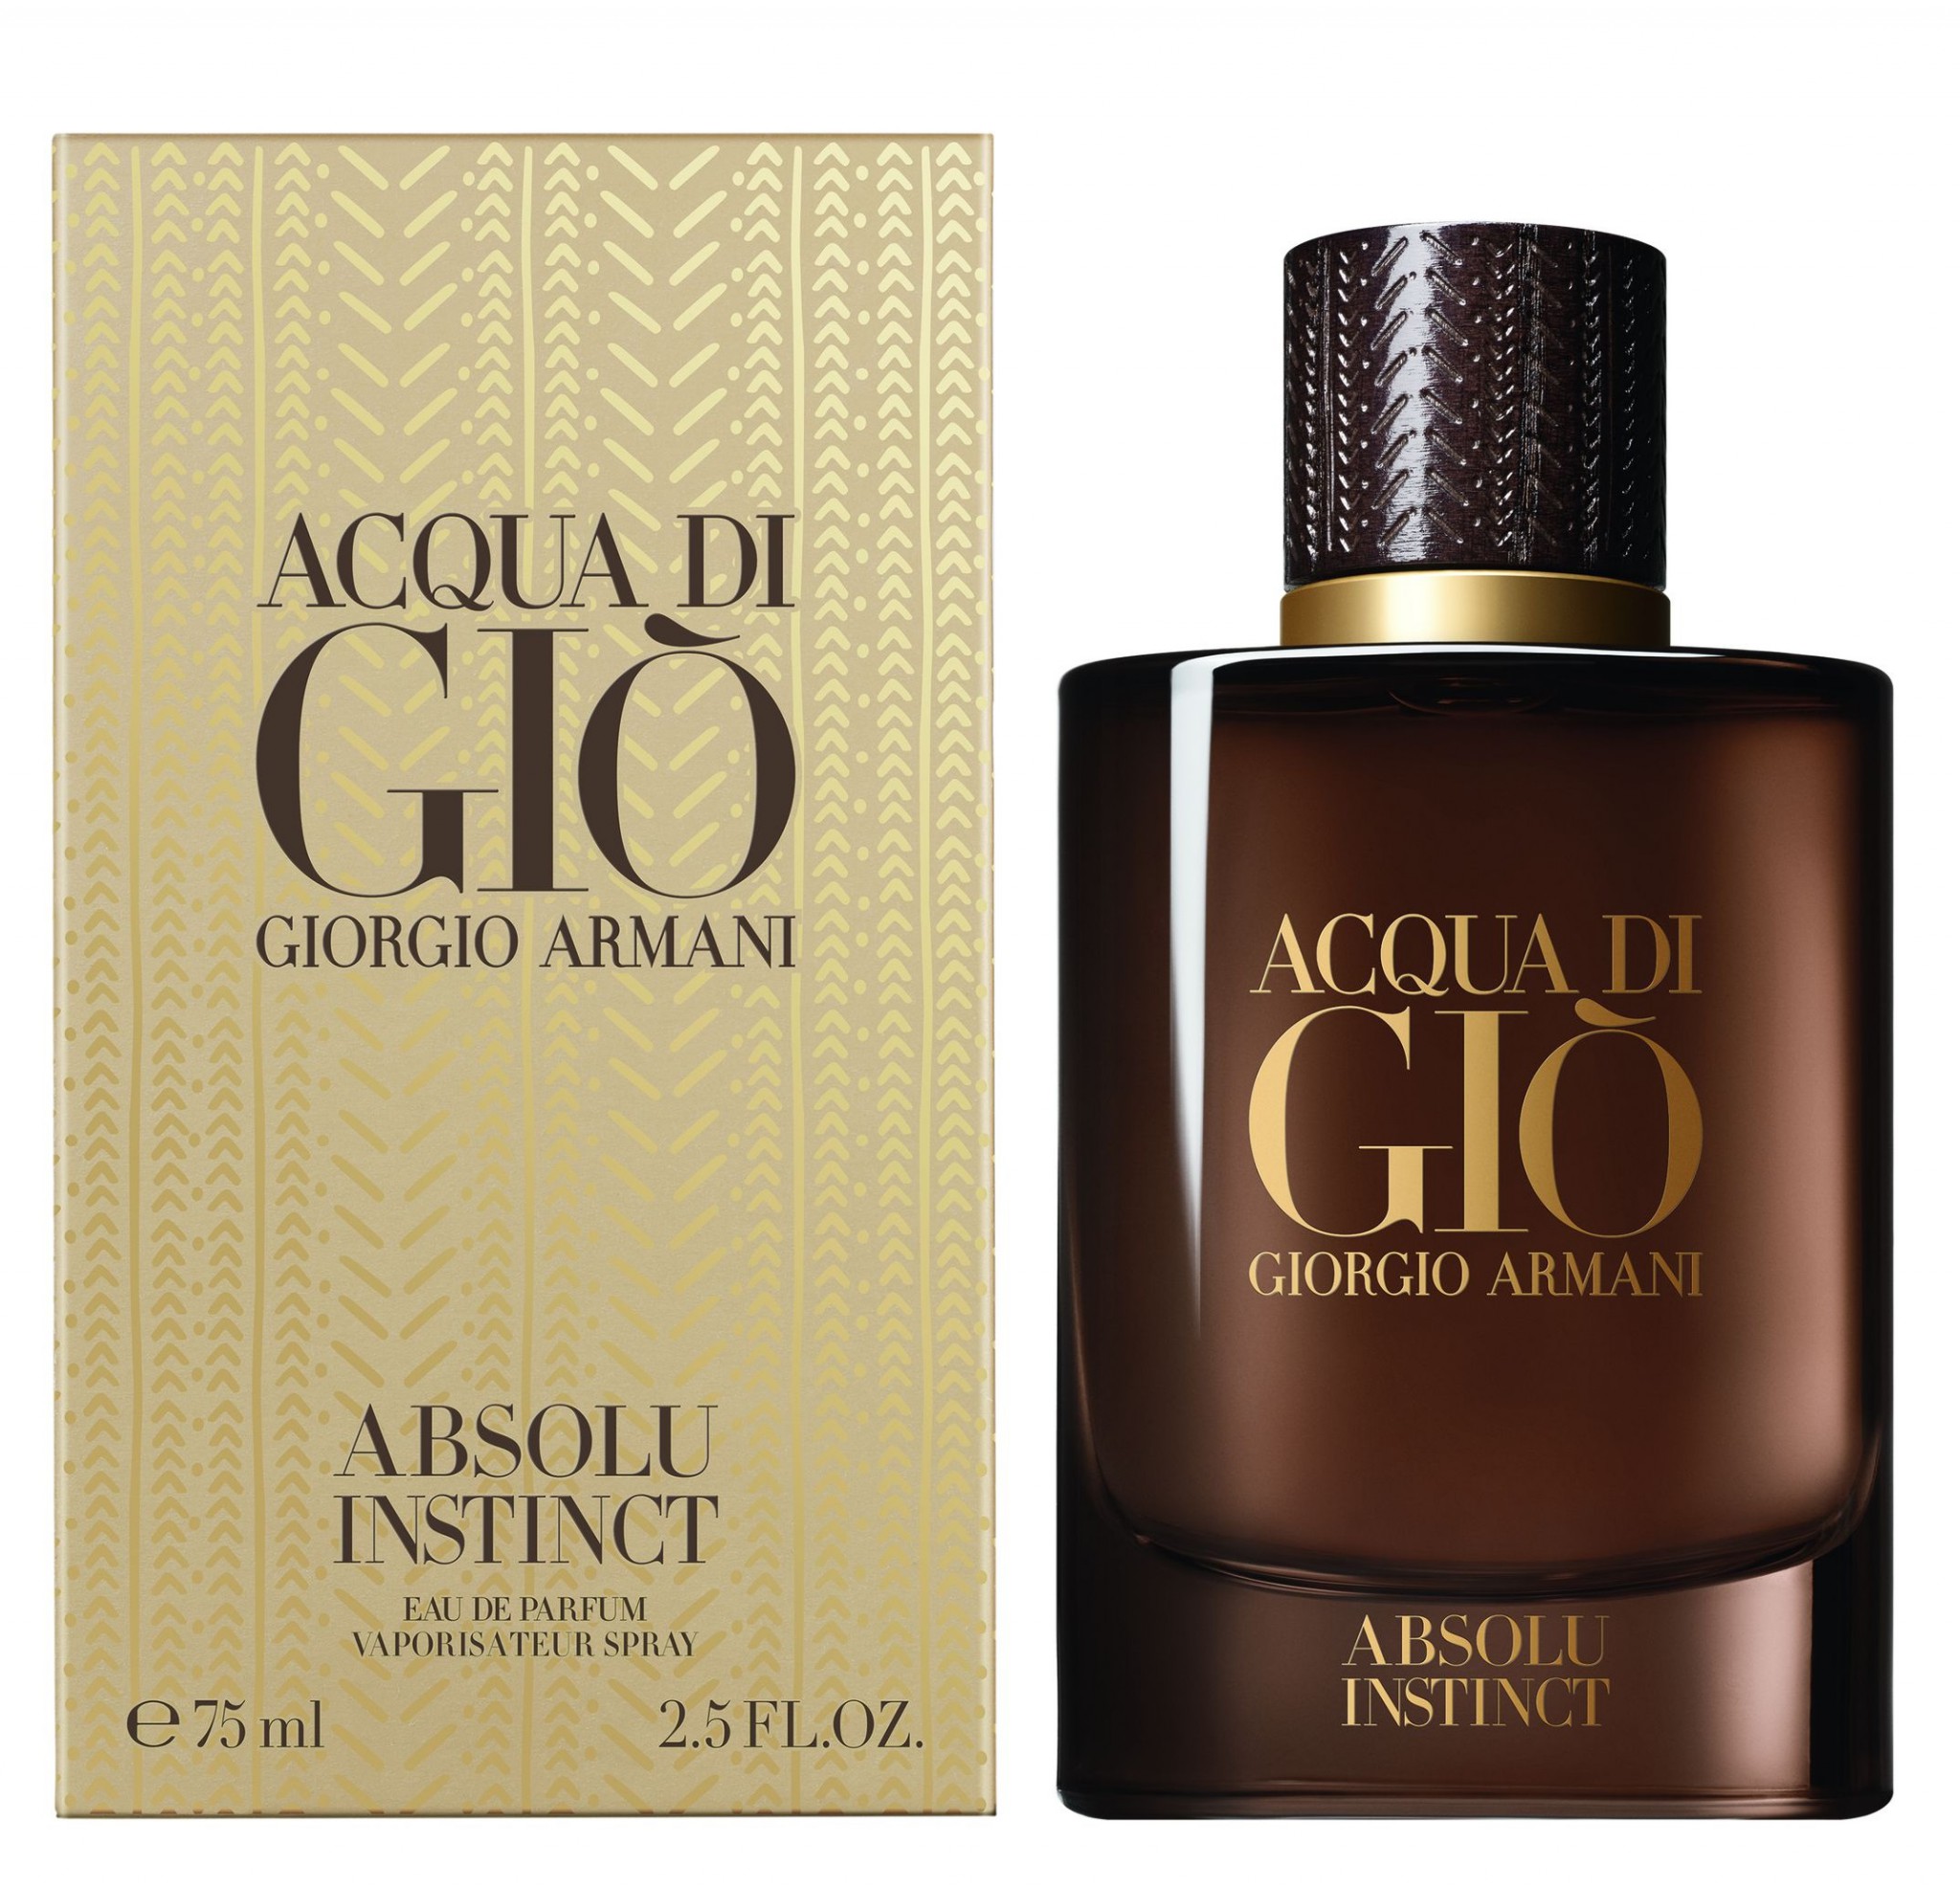 阿玛尼 寄情绝对本能 Giorgio Armani Acqua Di Giò Absolu Instinct香水评论香调价格味道香评评价 香水时代6zi